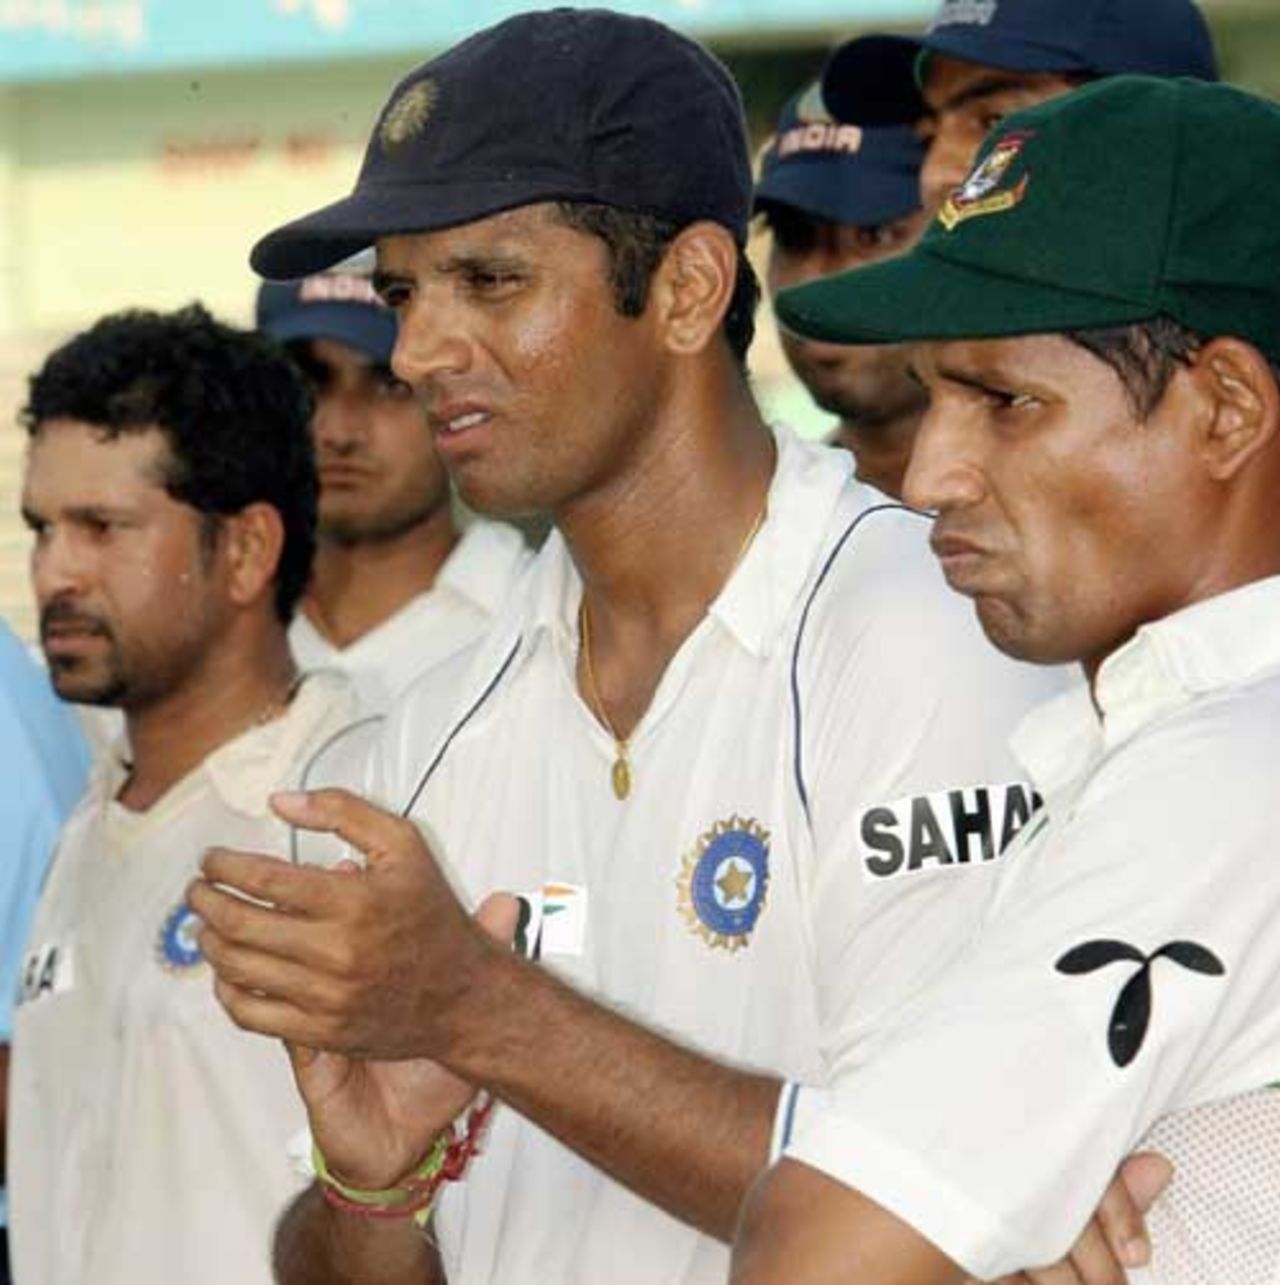 Rahul Dravid and Habibul Bashar applaud as Zaheer Khan picks up the Man of the Match award, Bangladesh v India, 2nd Test, 3rd day, Mirpur, May 27, 2007